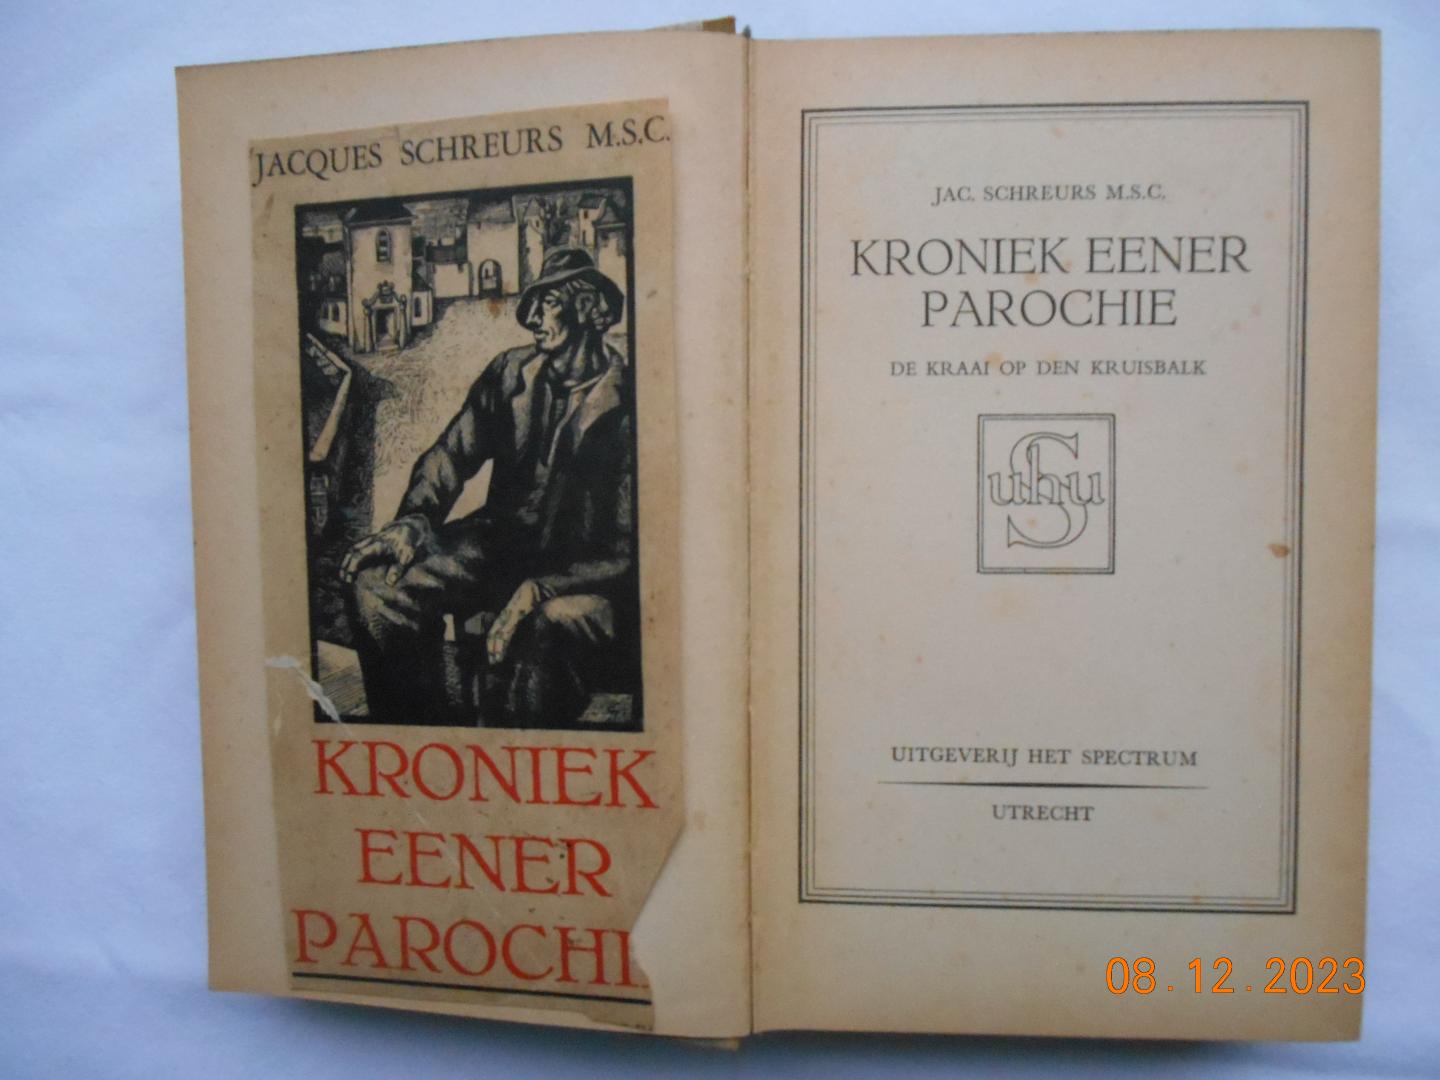 Schreurs, Jacques, M.S.C. - Kroniek eener (ener) parochie - eerste deel - De kraai op den Kruisbalk - van priester-dichter Jacques Schreurs M.S.C. (1893 - 1966)